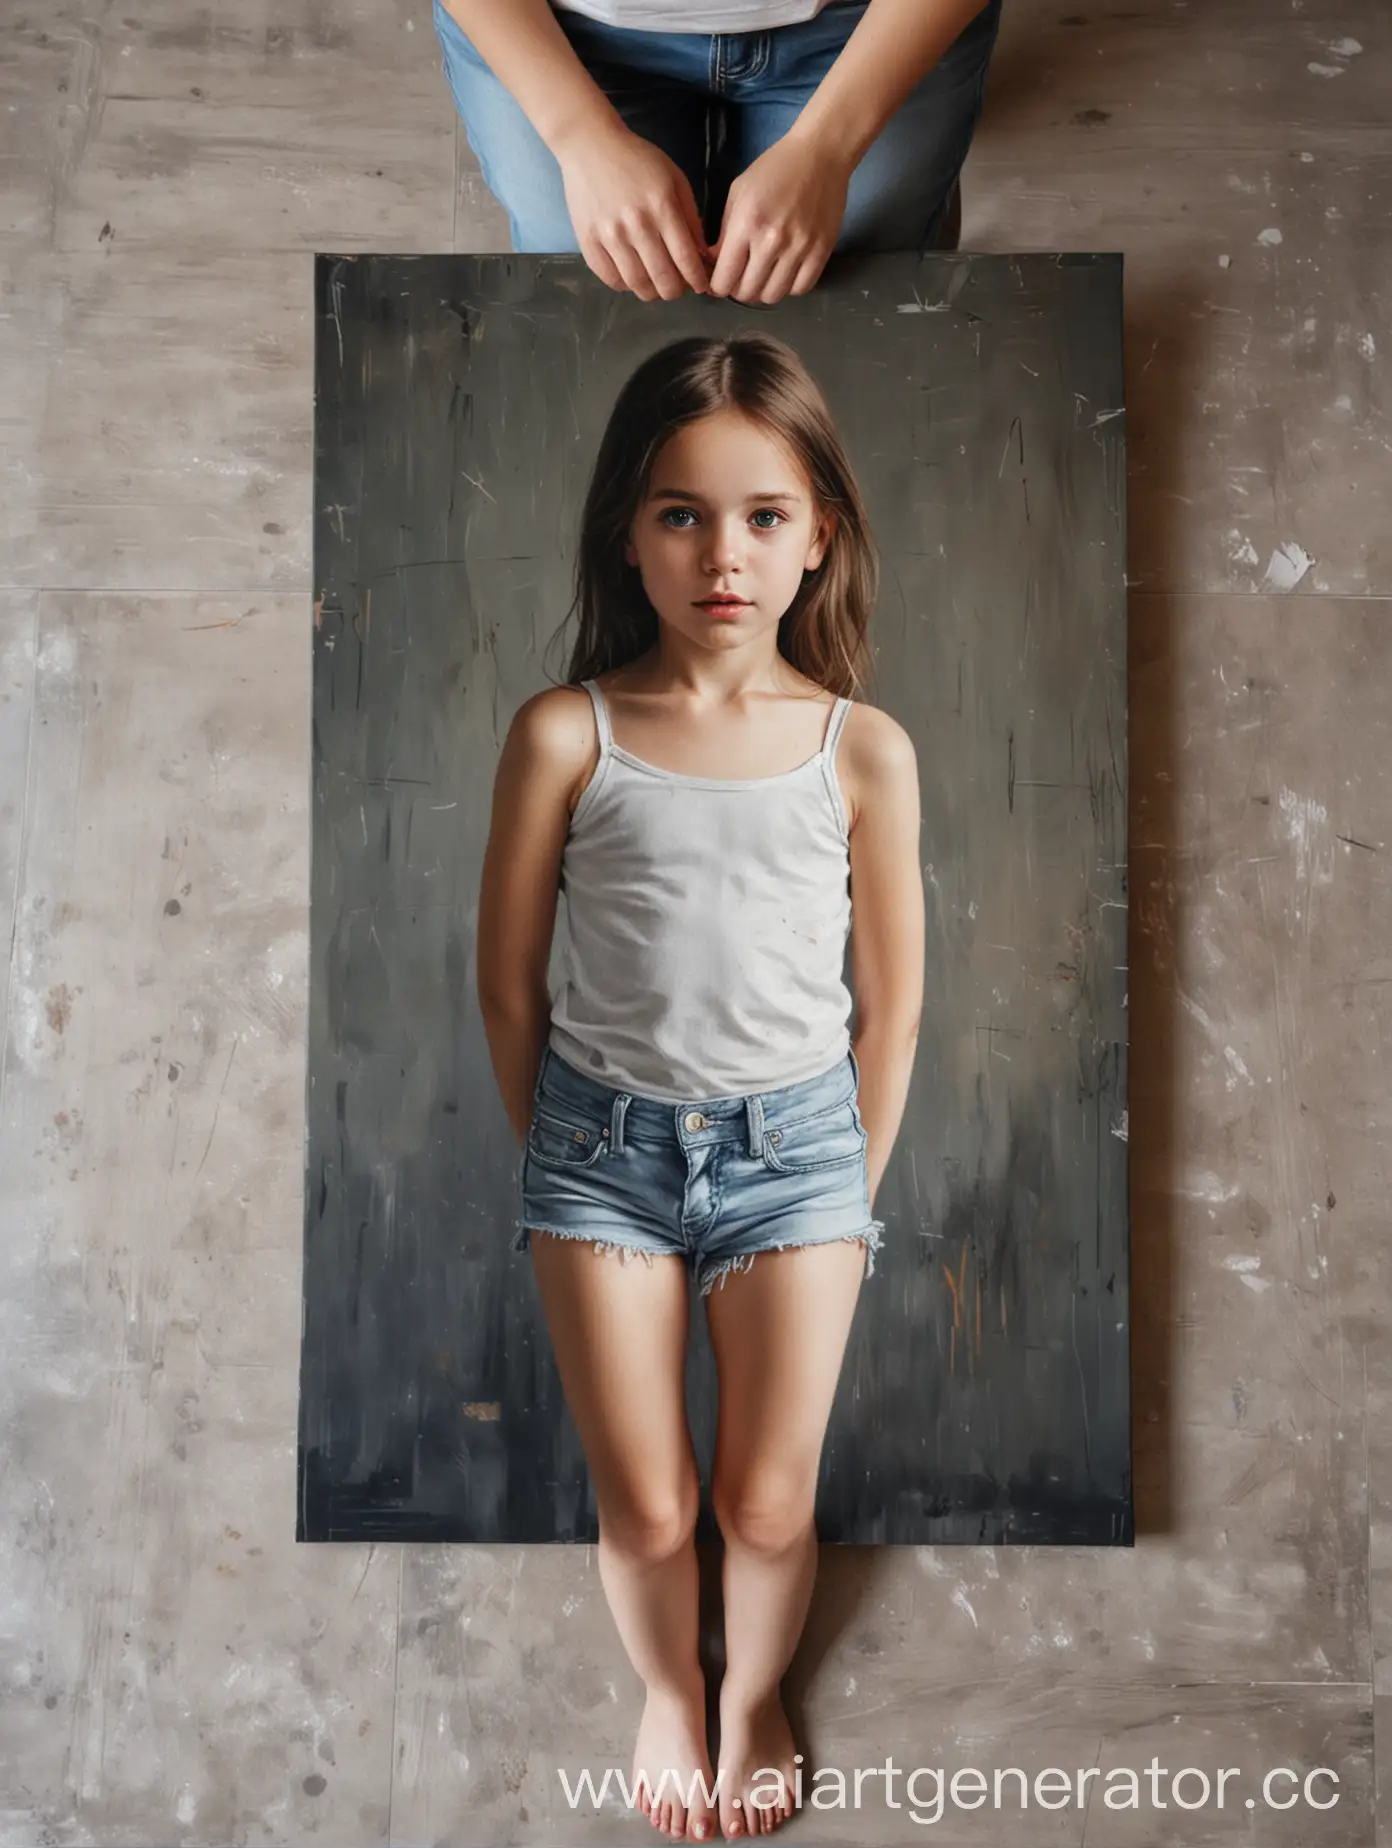 Beautiful-Girl-Holding-Portrait-Canvas-Artistic-Portrait-Photography-Concept